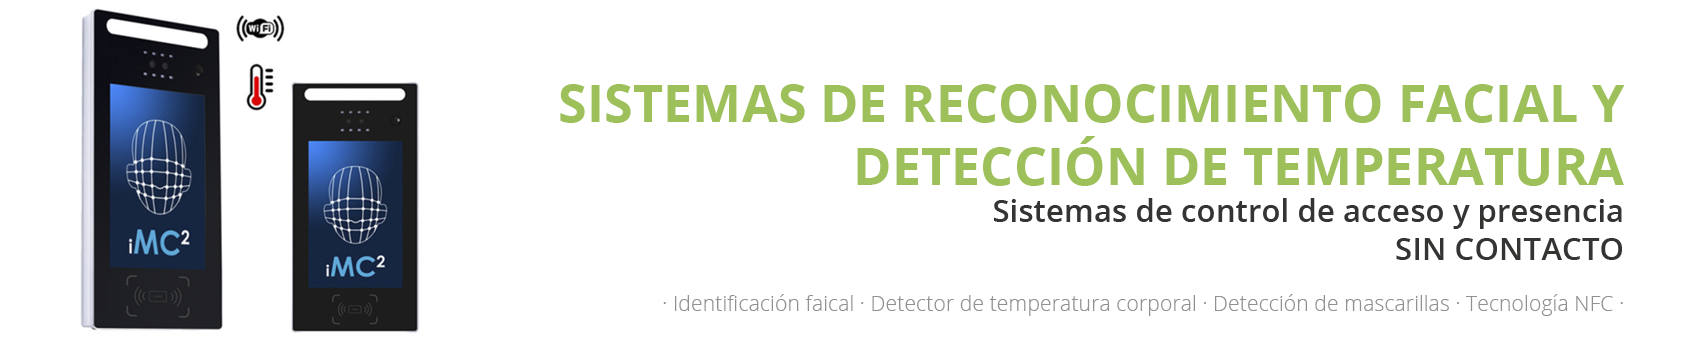 Sistemas de reconocimiento facial y detección de temperatura